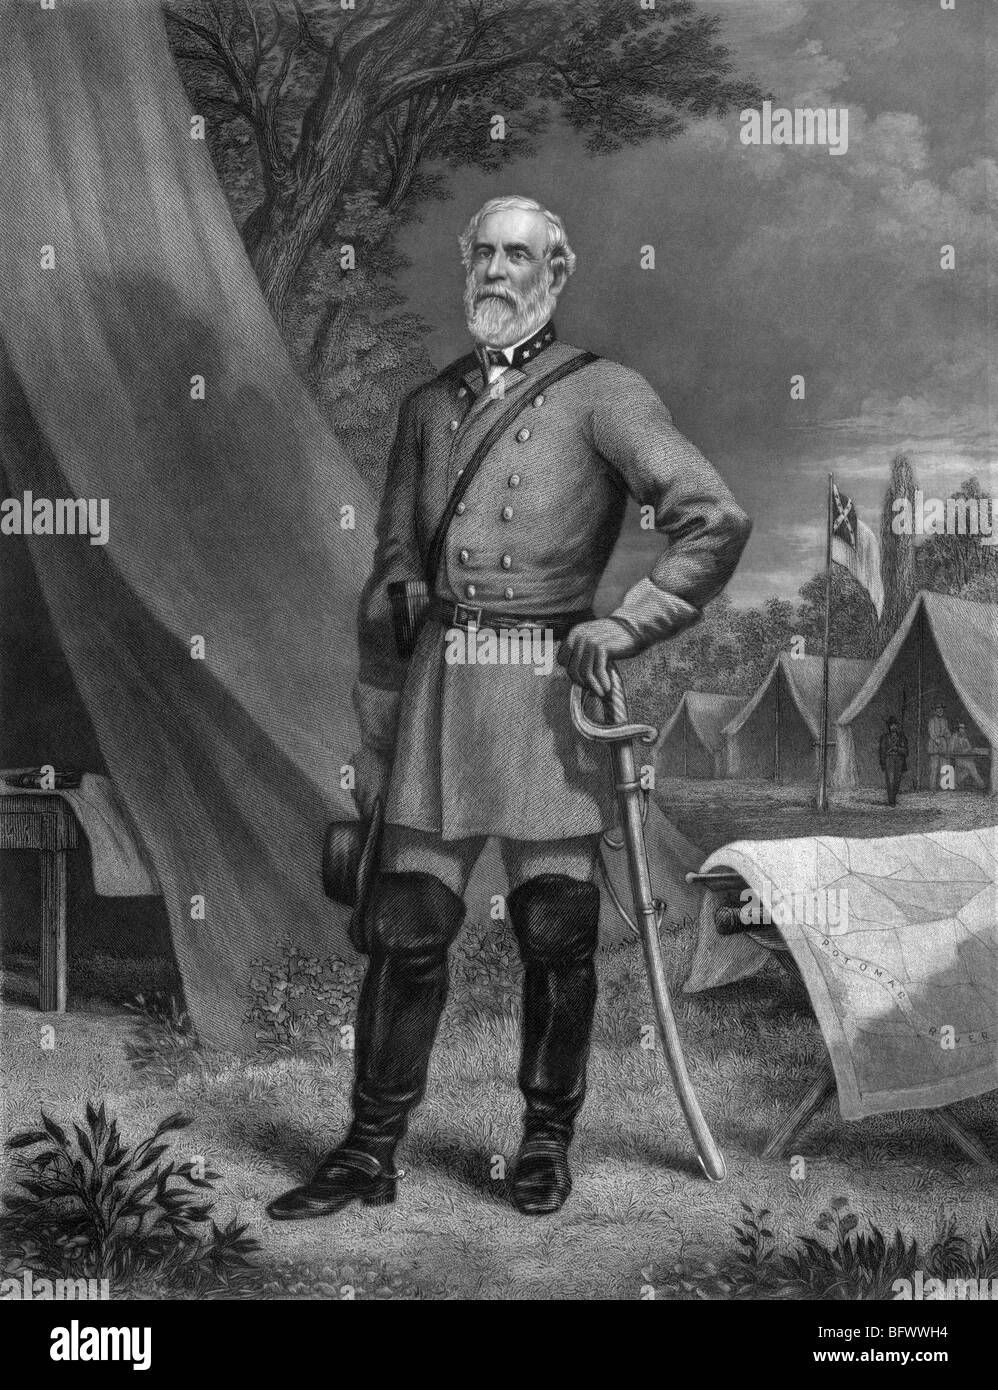 Ritratto del generale Robert e Lee (1807 - 1870) - comandante dell'esercito confederato della Virginia del Nord in noi la guerra civile. Foto Stock